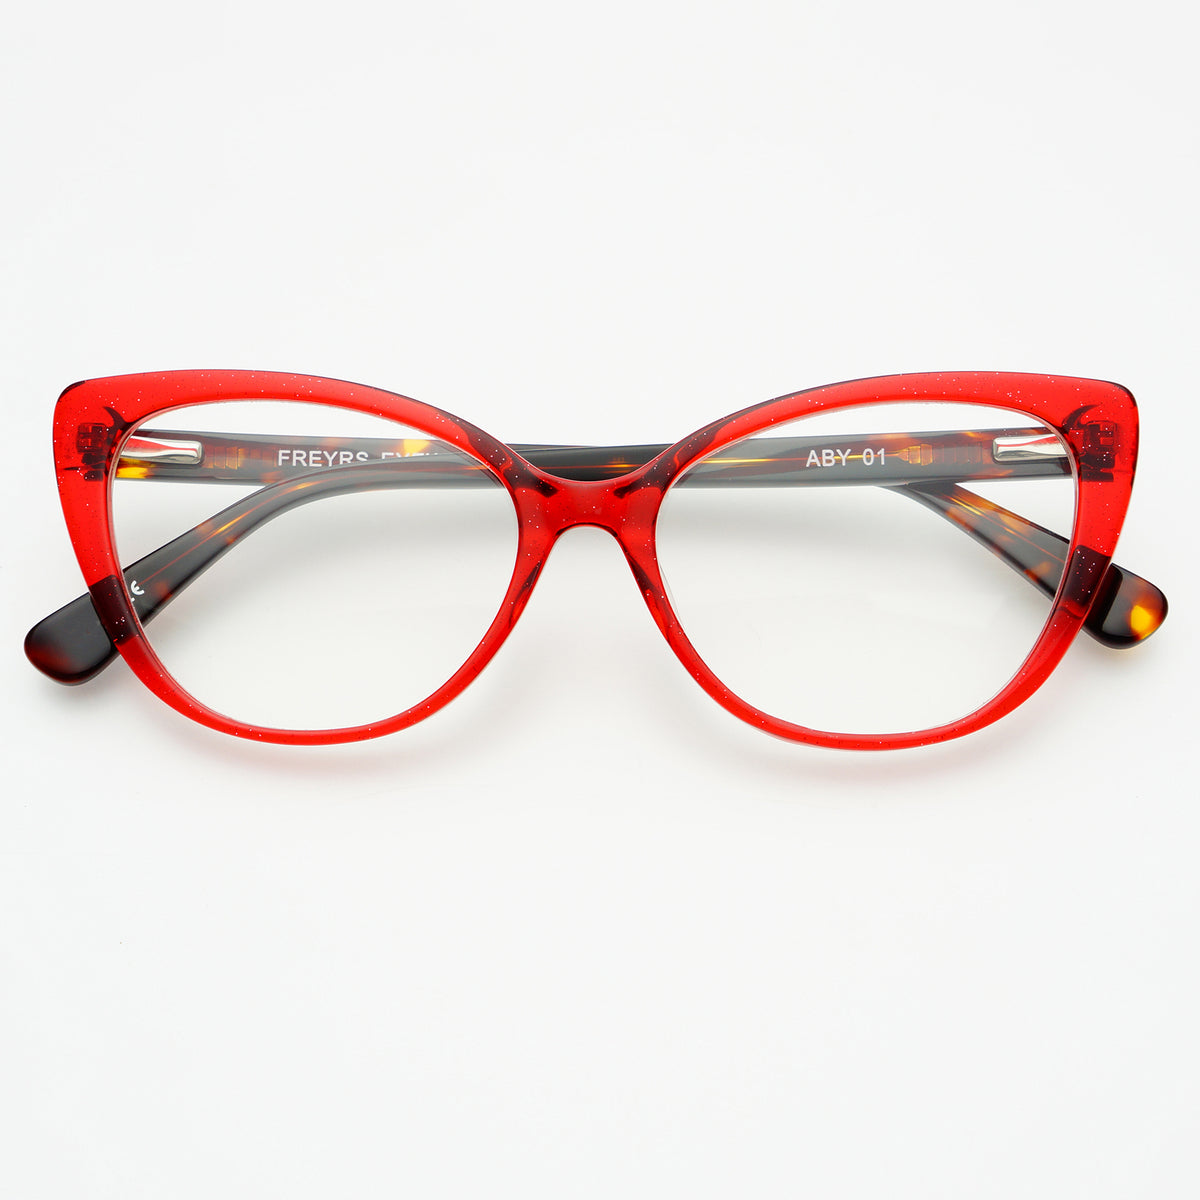 red glasses frames